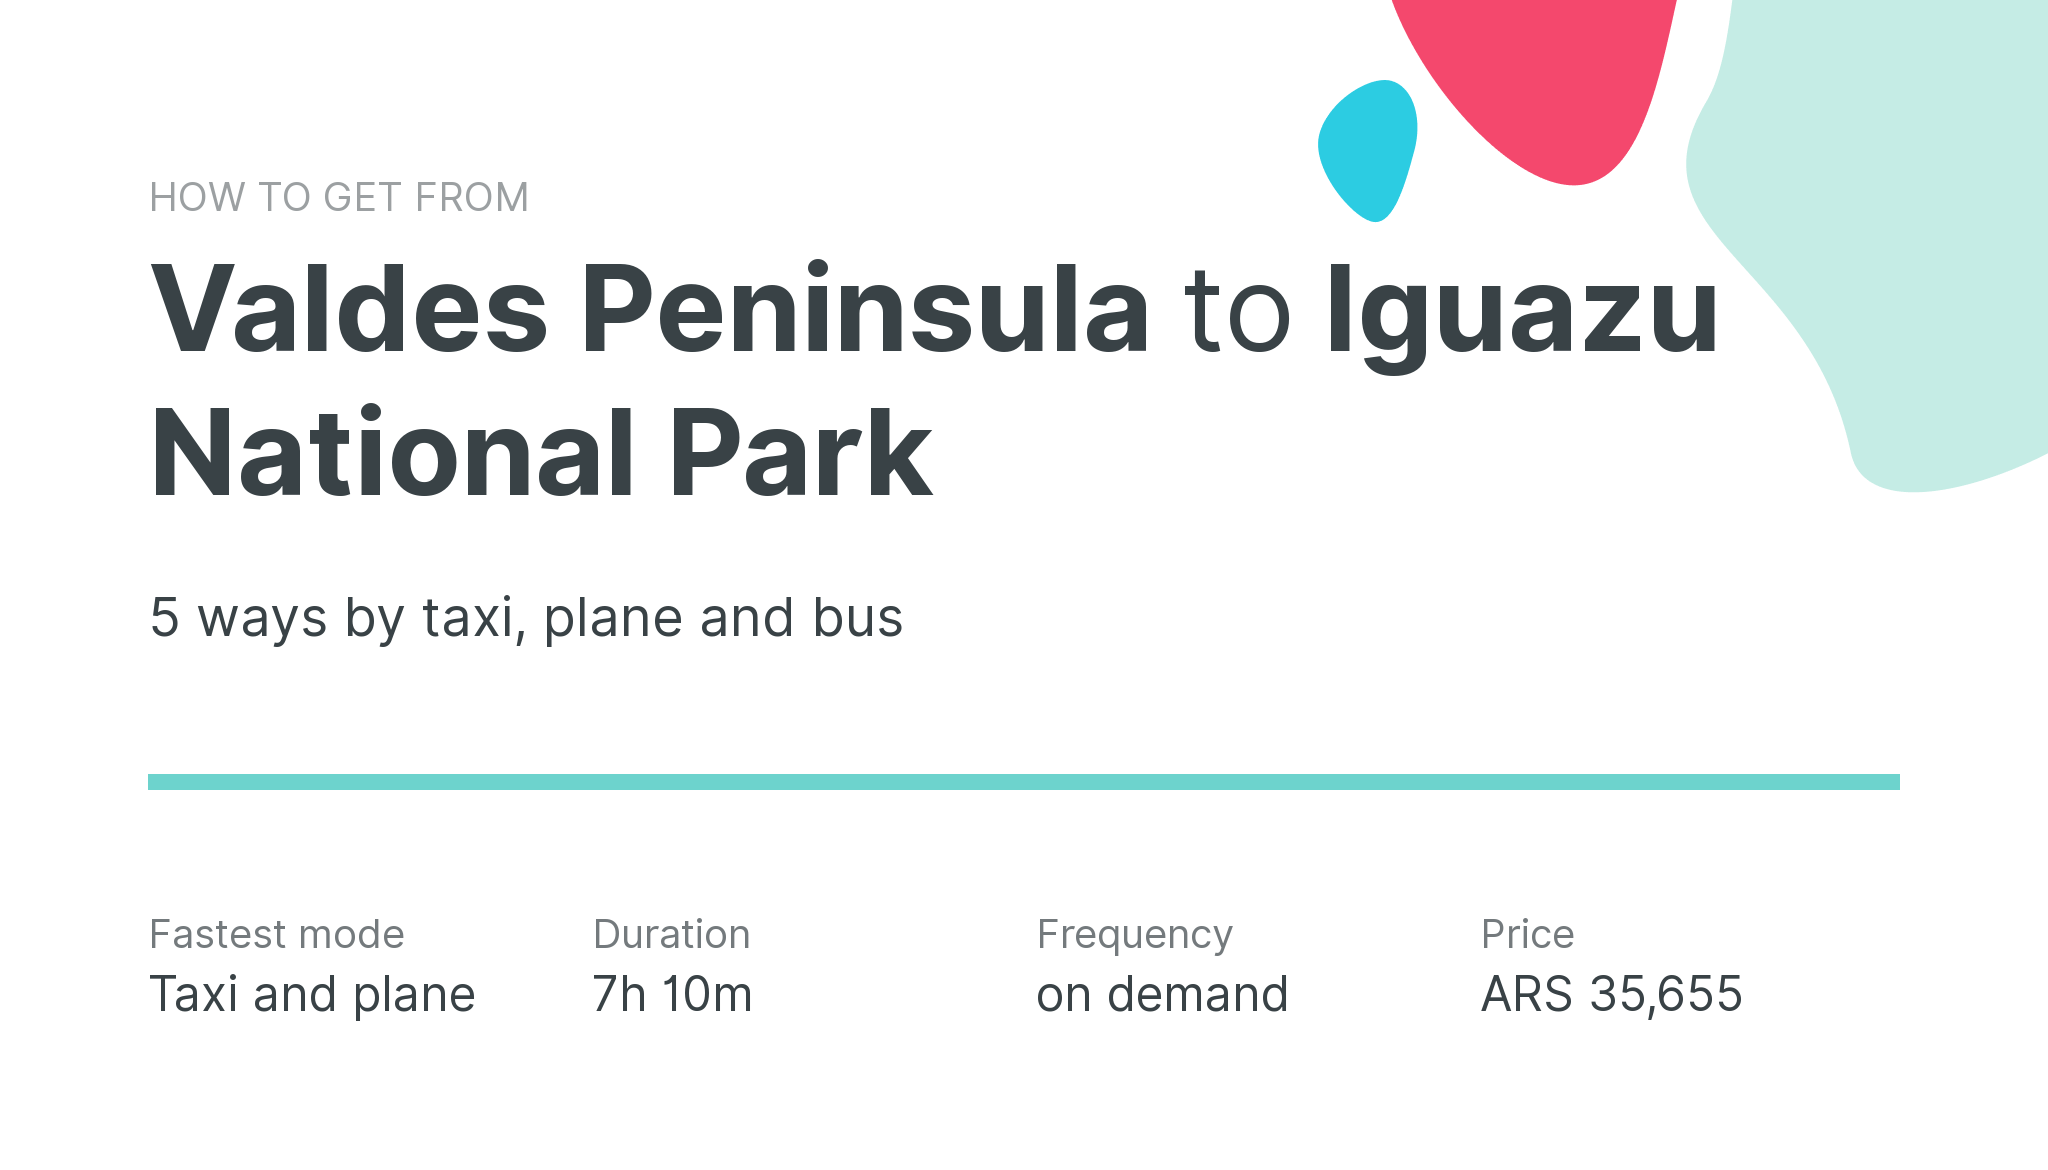 How do I get from Valdes Peninsula to Iguazu National Park